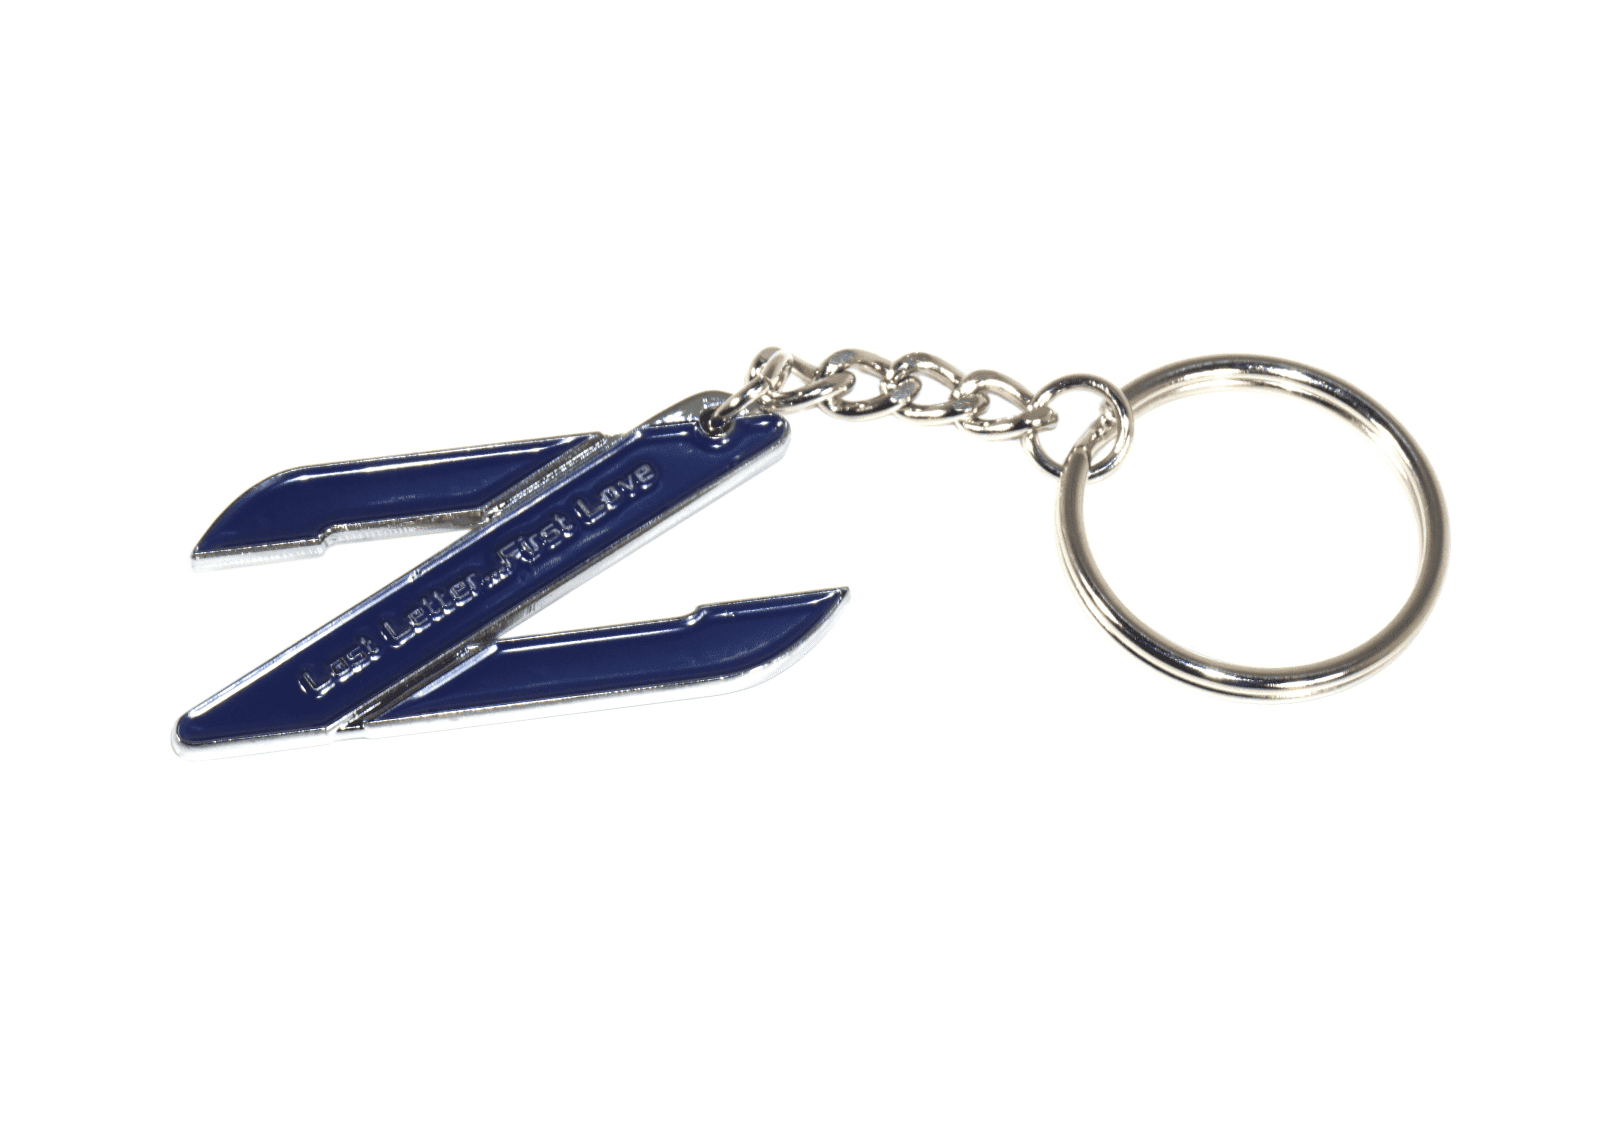 ZSPEC Chrome & Colored Keychain, Style: Nissan Z32 300zx